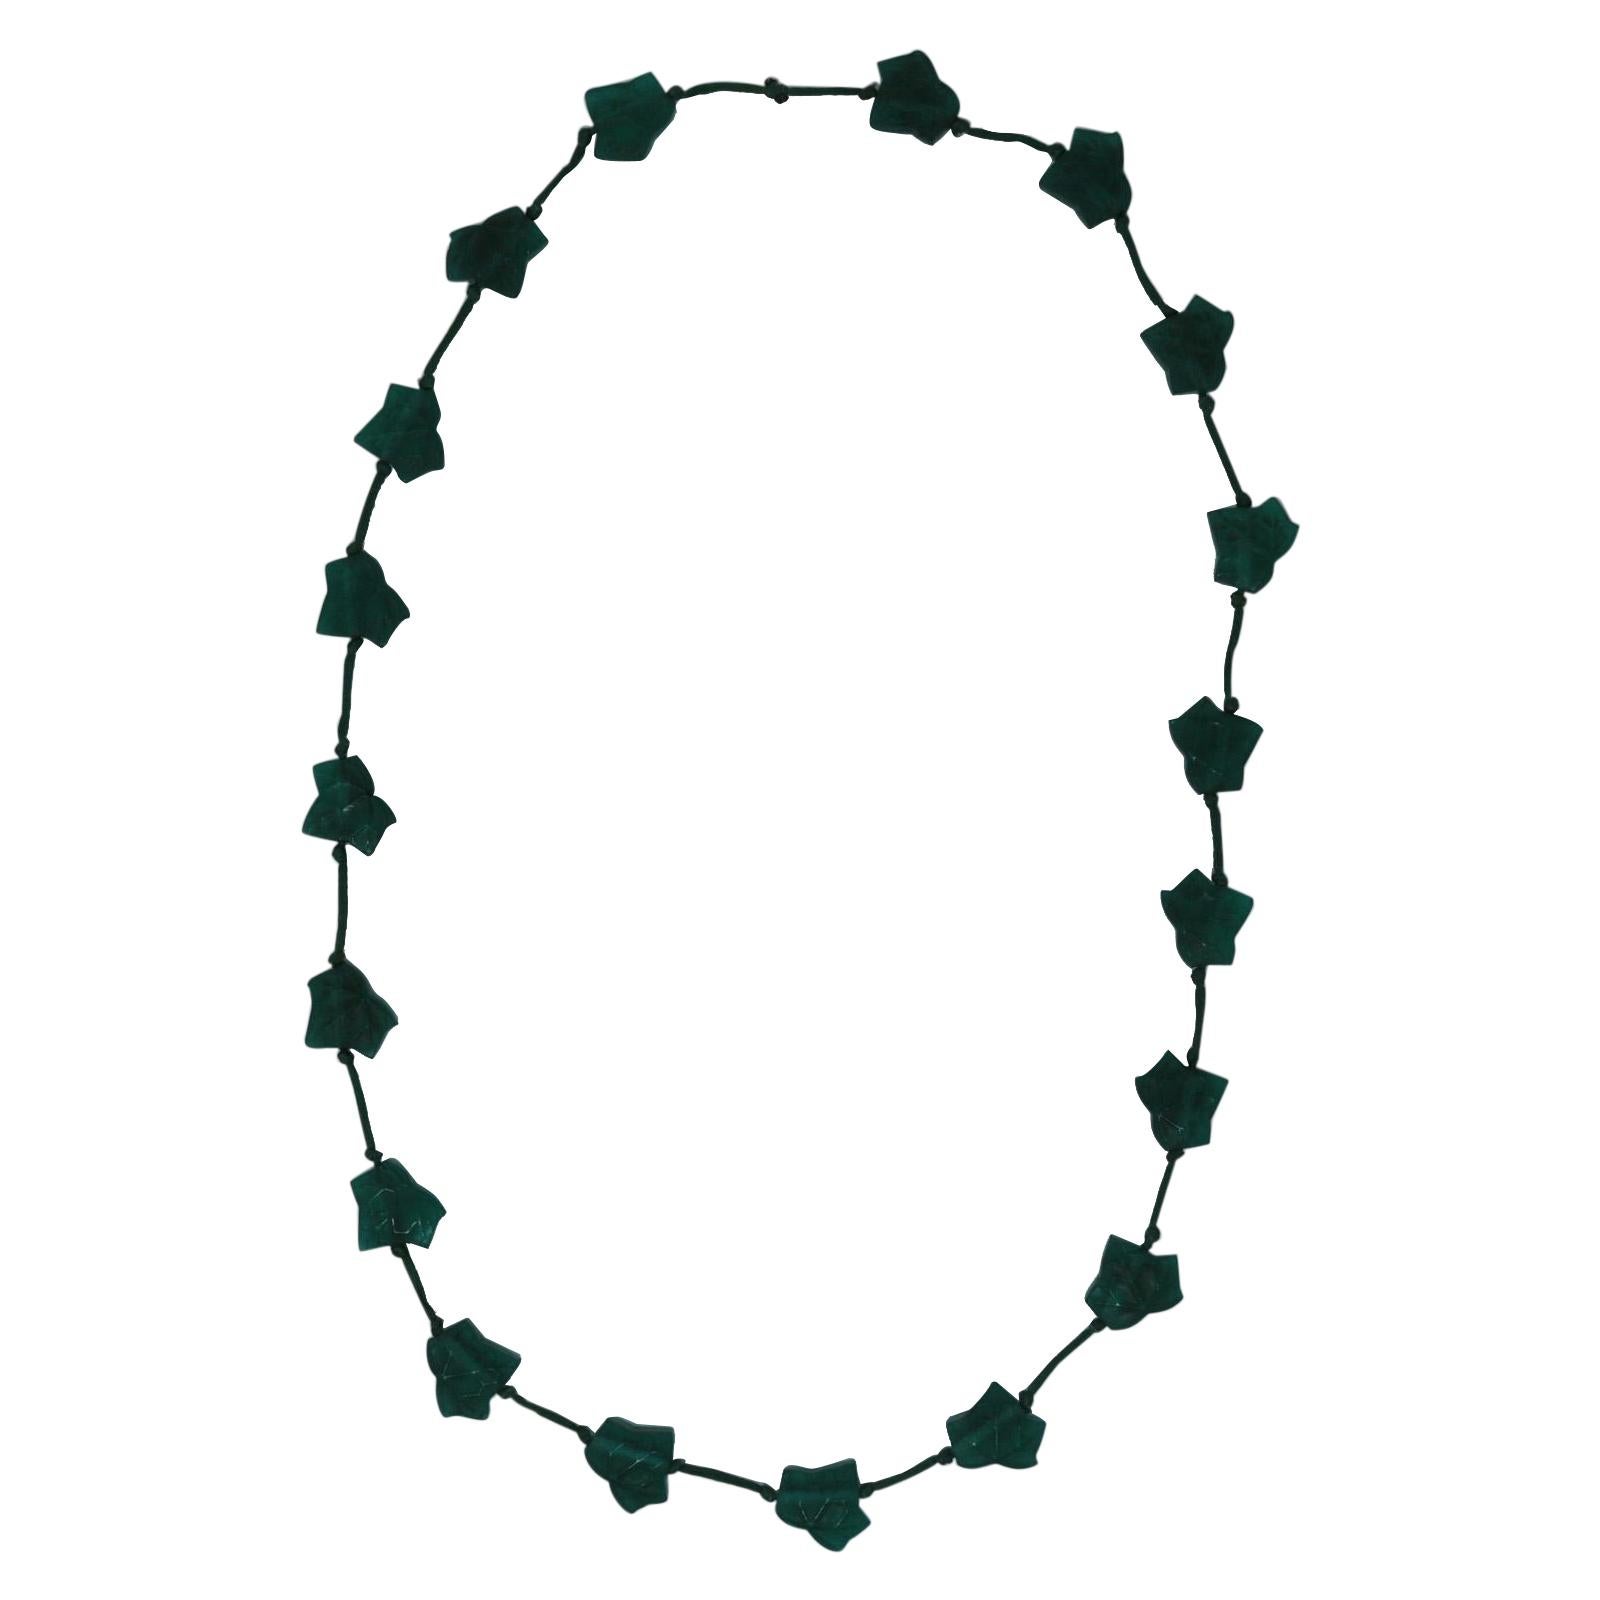 Rene Lalique Green Glass 'Feuilles De Lierre' Necklace